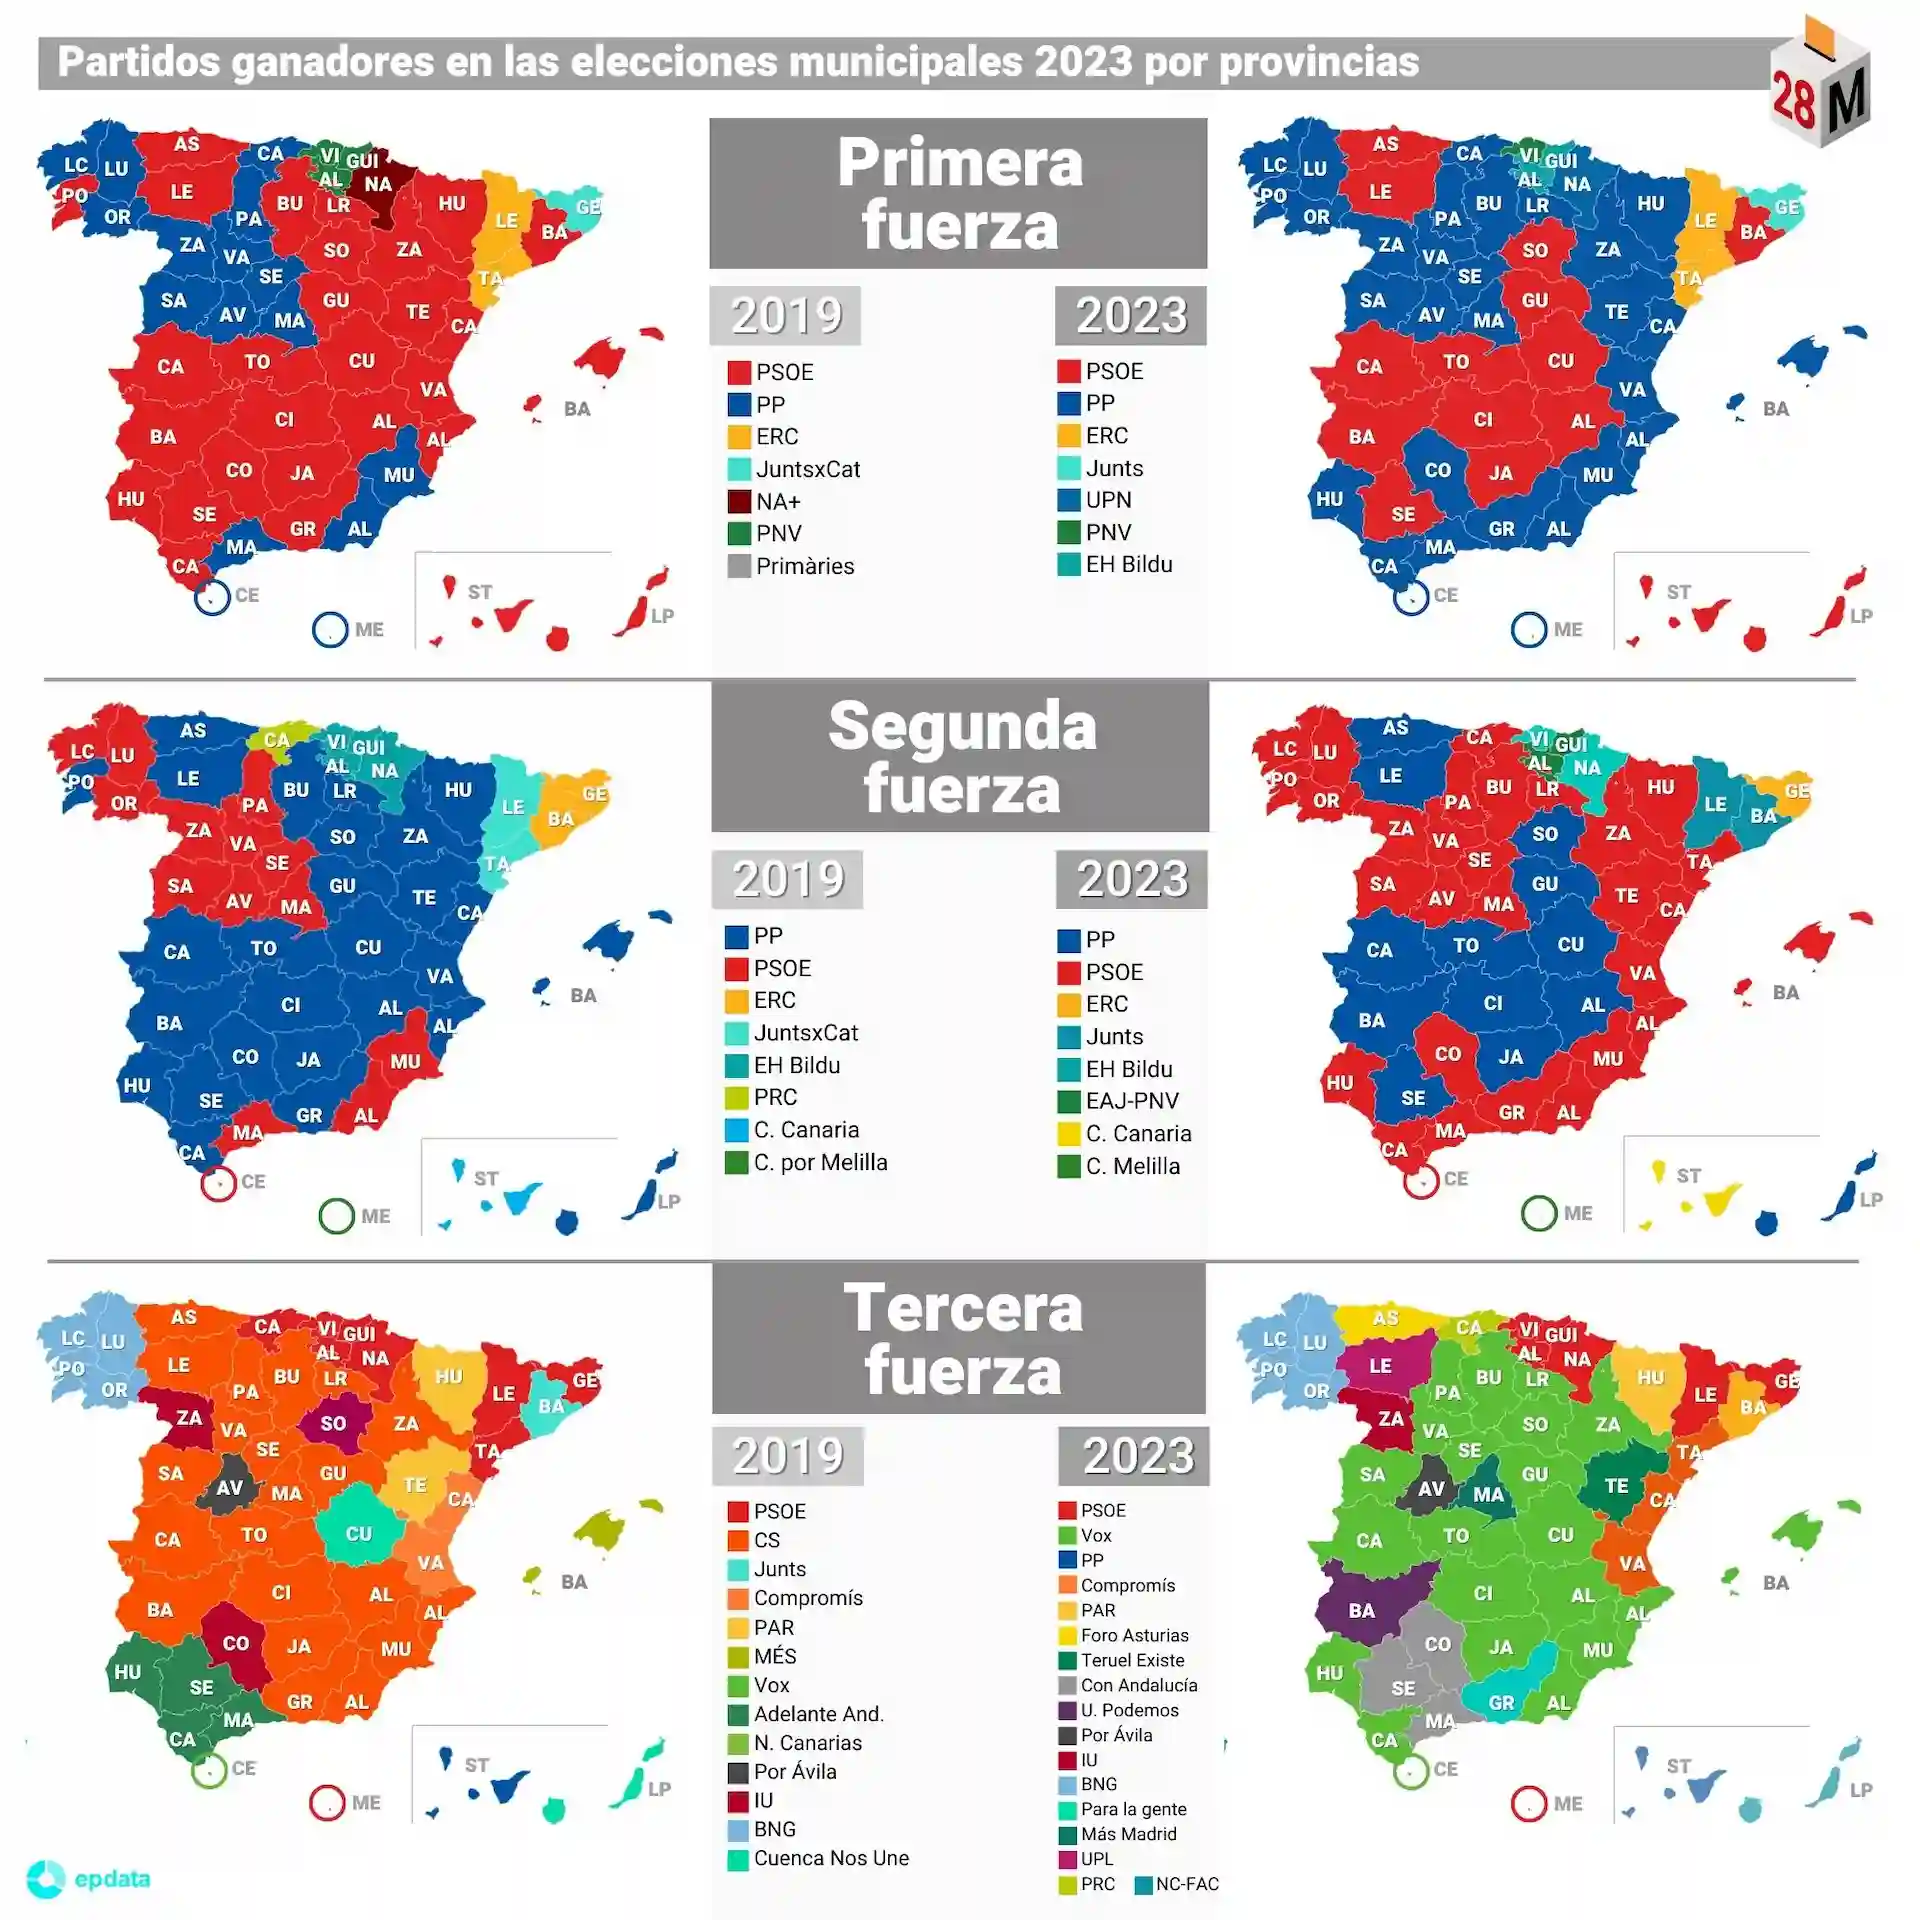 Partidos ganadores en las elecciones municipales de 2023 por provincias / Mapas: EP